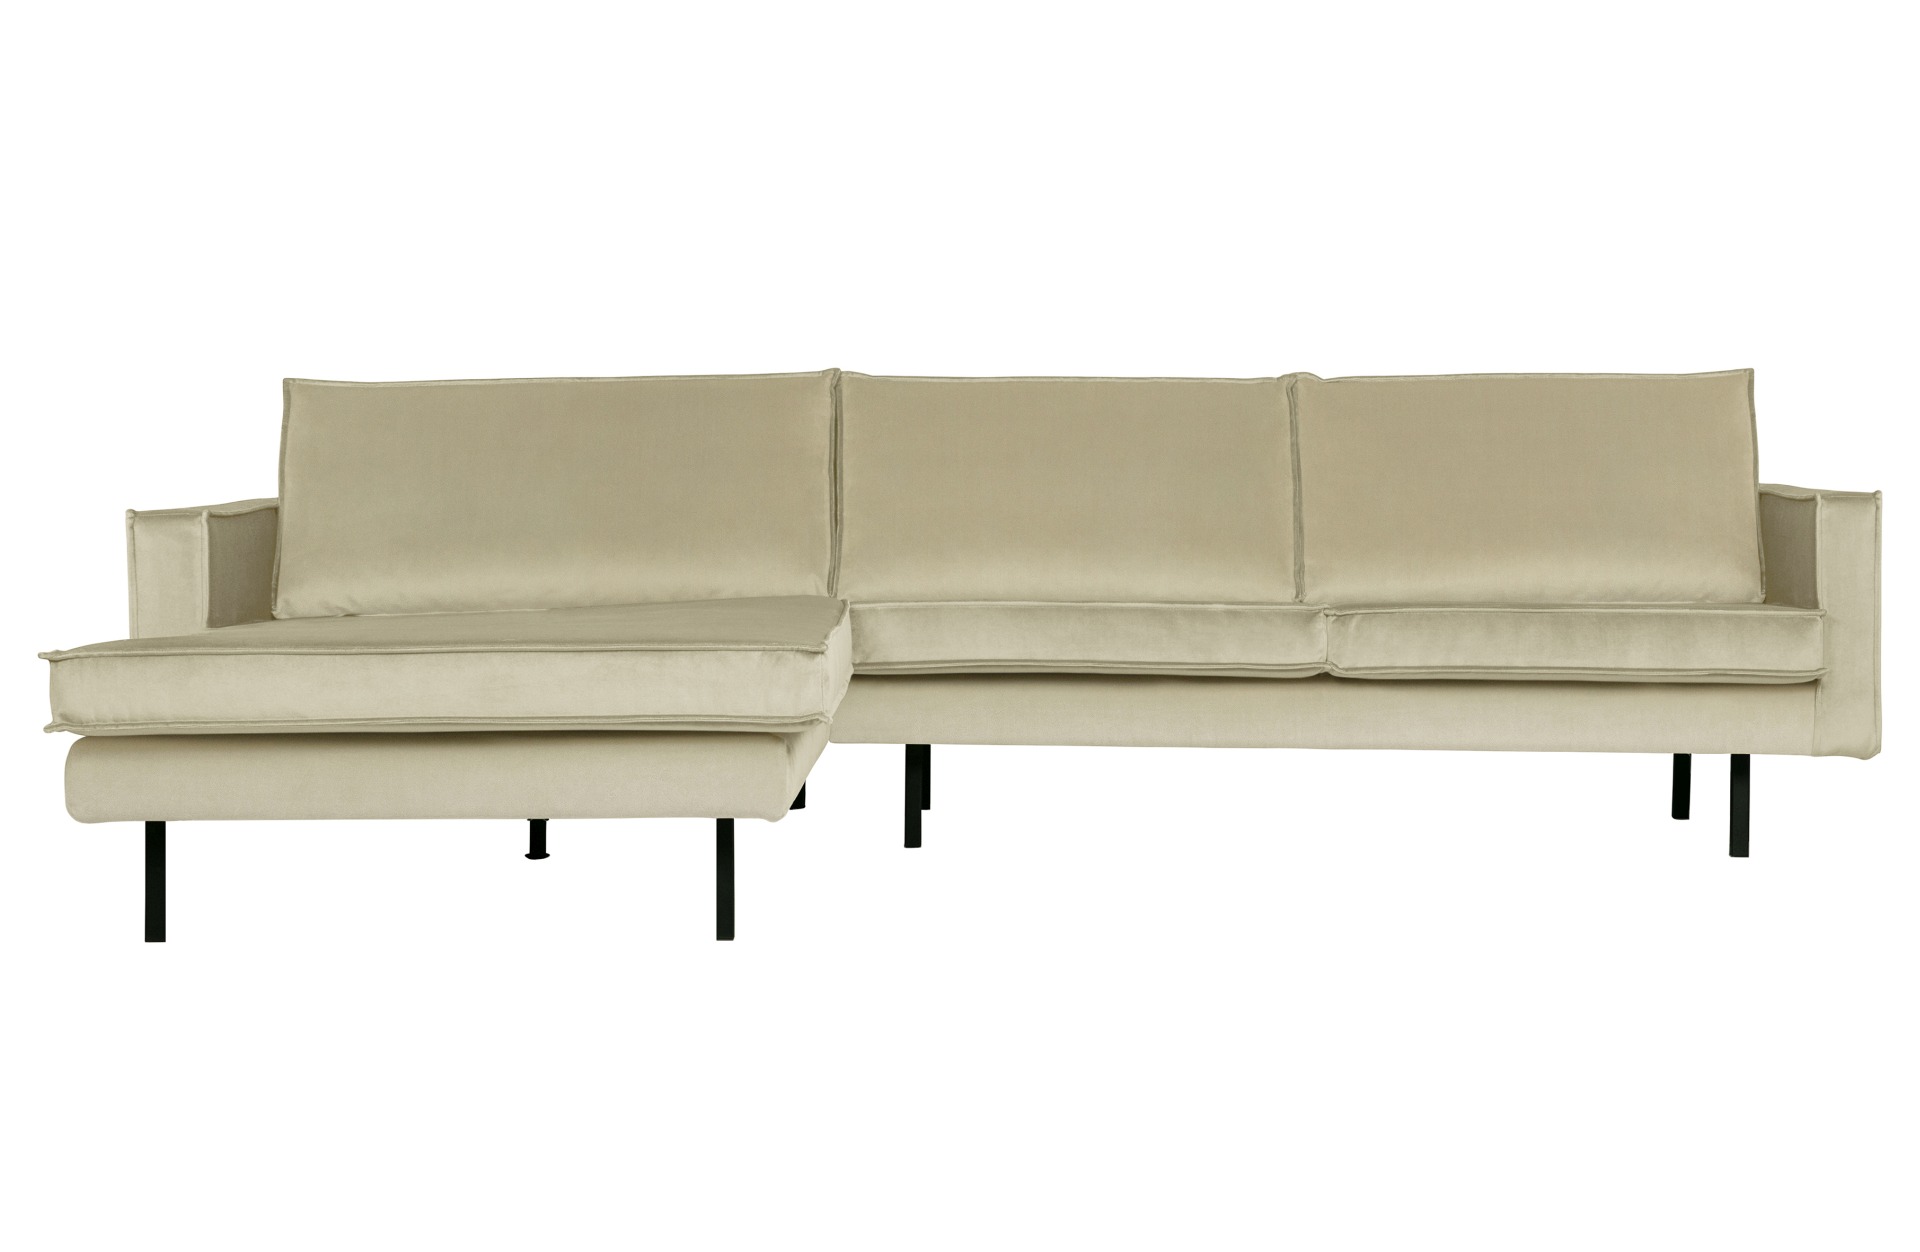 Das Ecksofa Sofa Rodeo Chaiselounge überzeugt mit seinem modernem Design. Gefertigt wurde das Sofa aus einem Samt Bezug, welcher einen Pistazie Farbton besitzt. Die Beine sind aus Metall und haben eine schwarze Farbe.